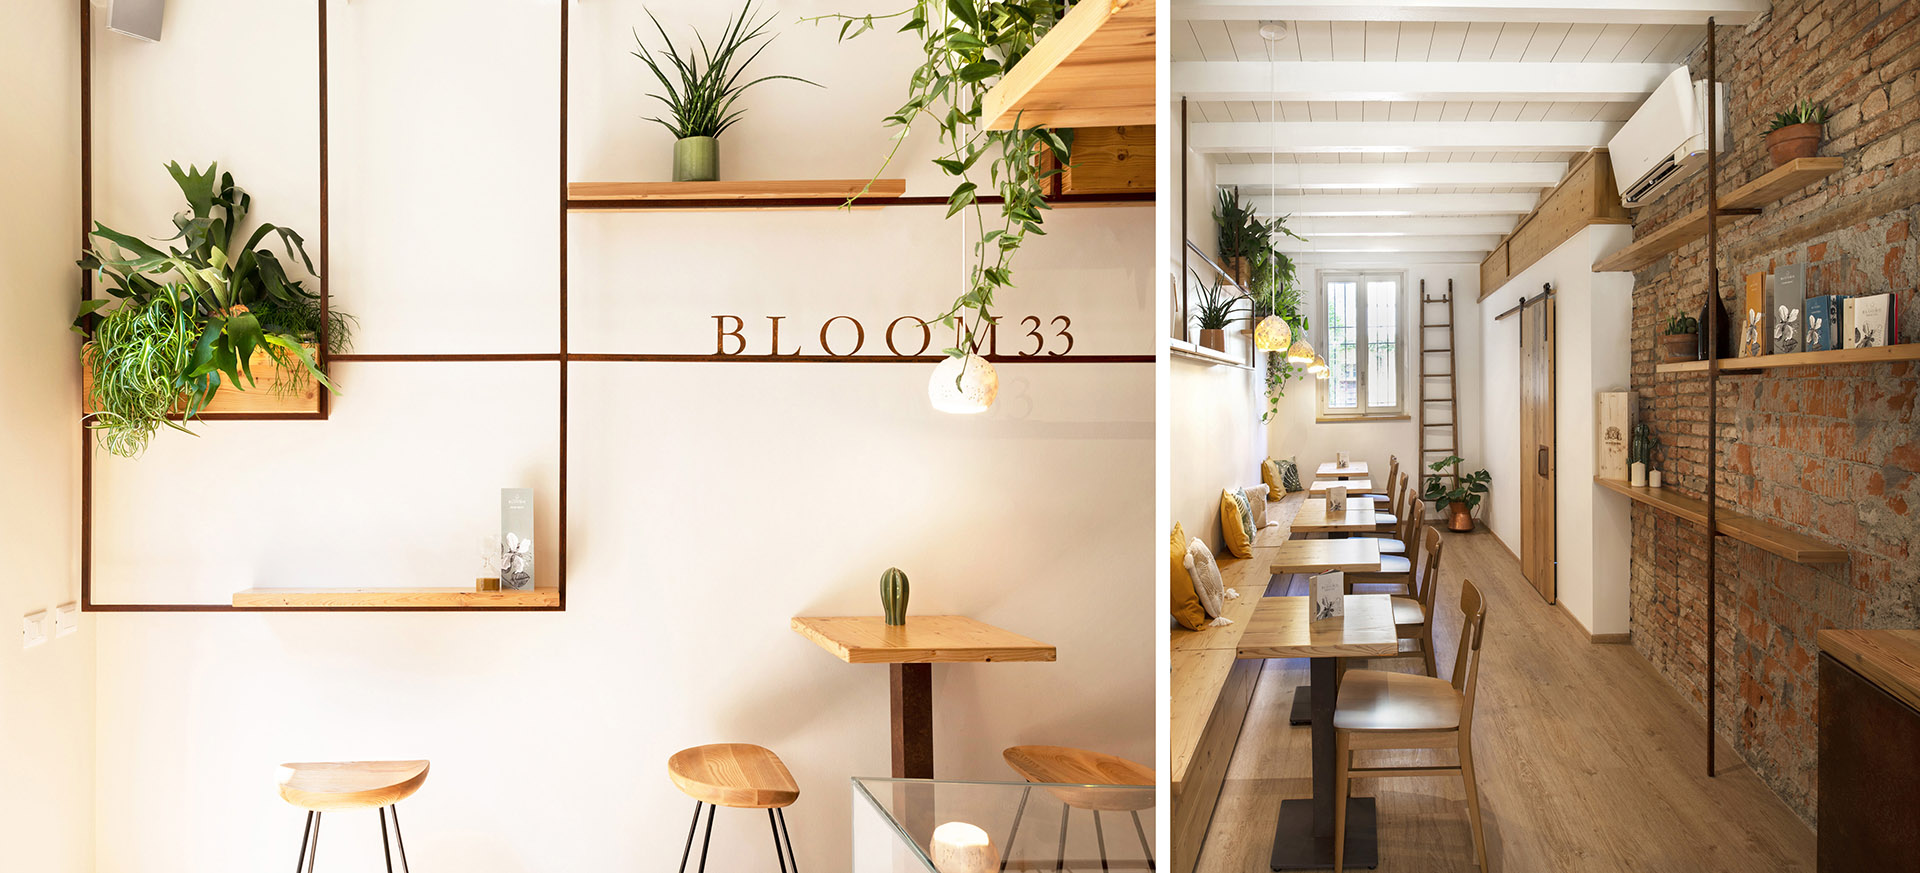 Diseño de líneas finas y un moodboard natural para el Bloom 33 Botanic Bar  de la calle Mazzini en Crema - designonweb - arkitectureonweb